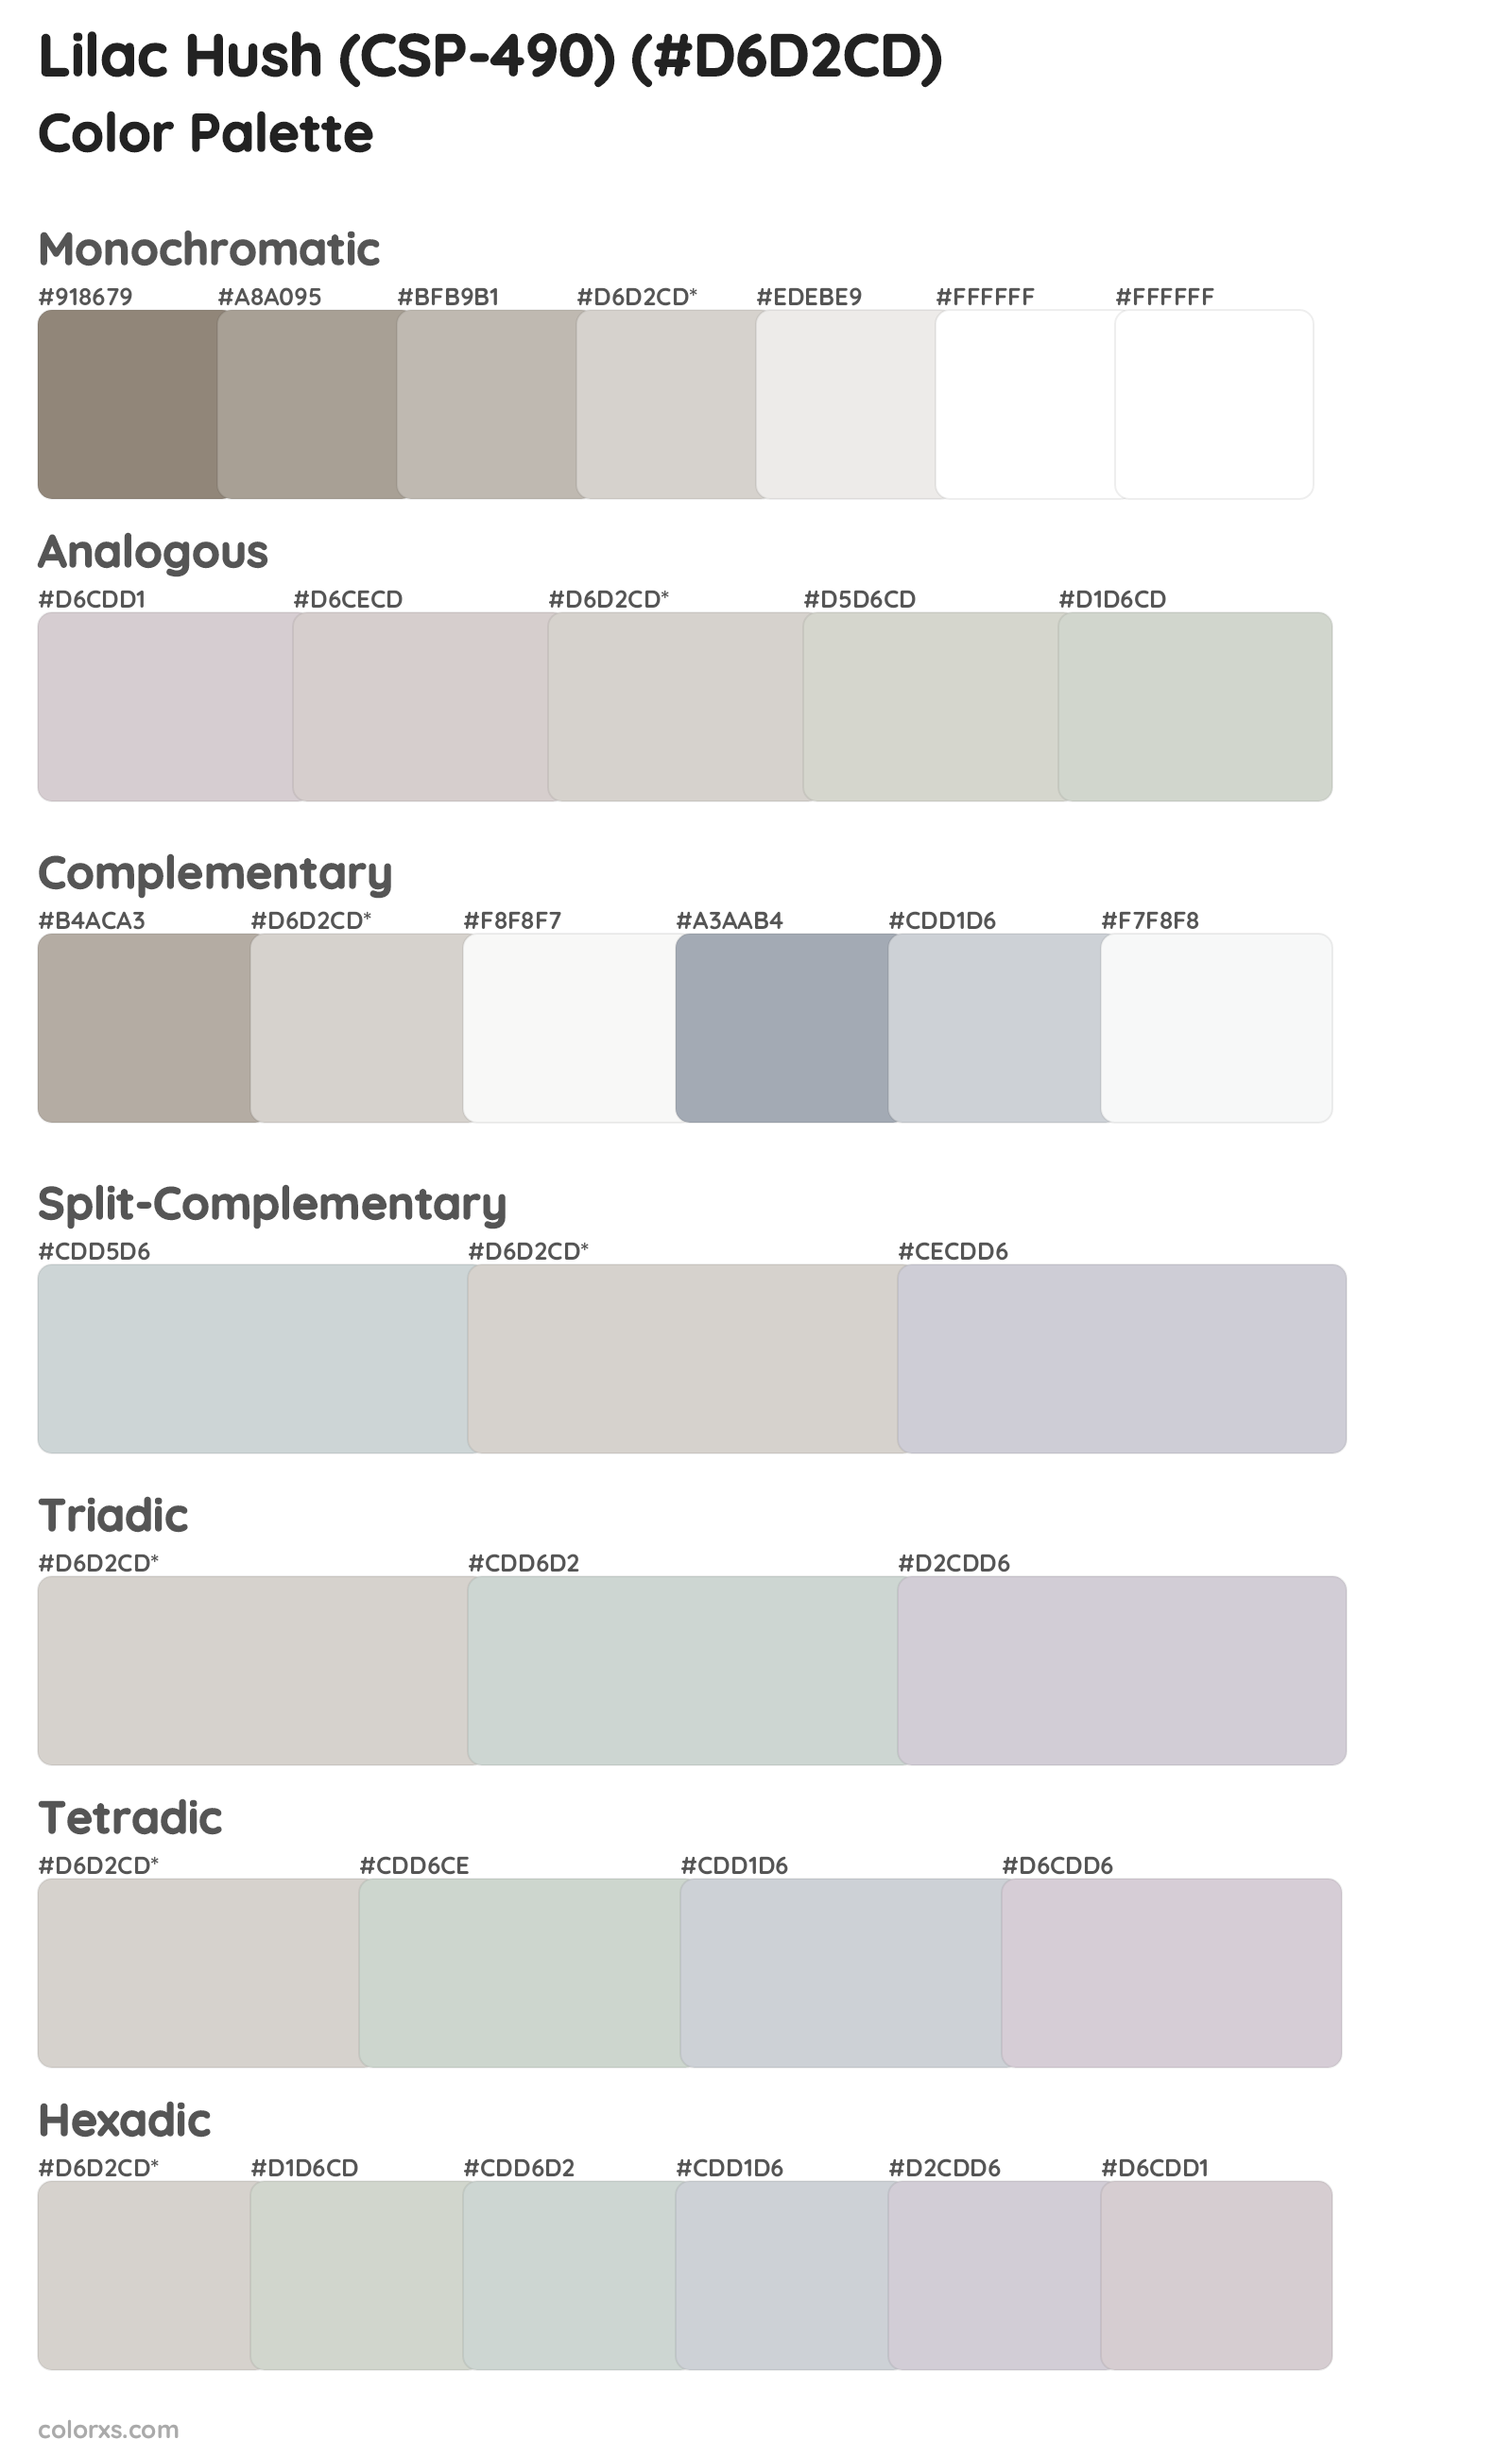 Lilac Hush (CSP-490) Color Scheme Palettes